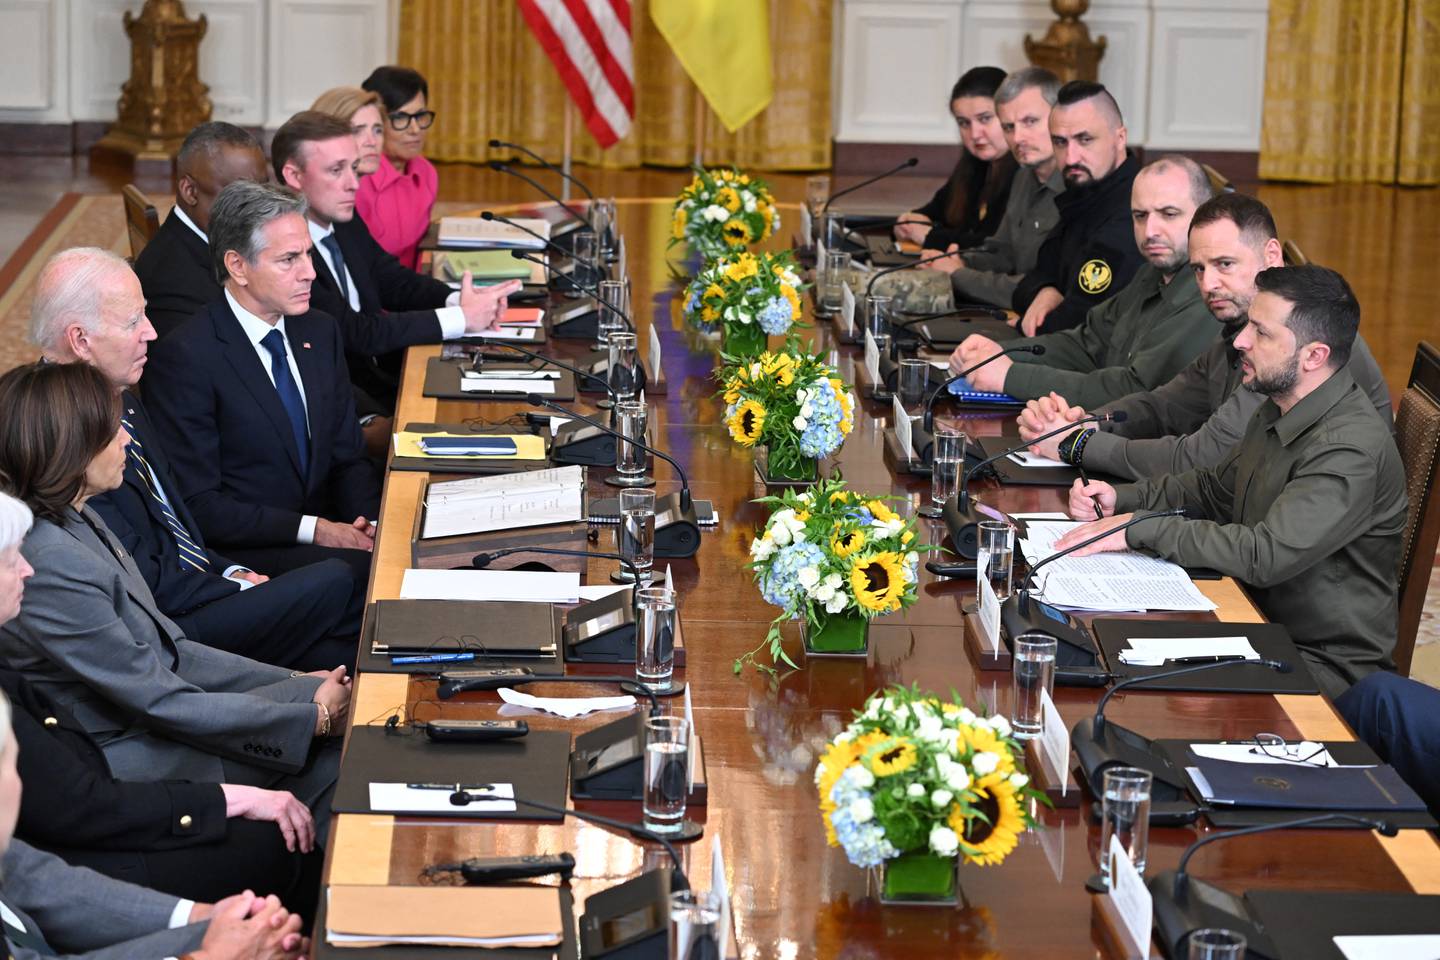 El presidente estadounidense Joe Biden y el presidente ucraniano Volodymyr Zelensky participan en una reunión bilateral ampliada en el Salón Este de la Casa Blanca en Washington